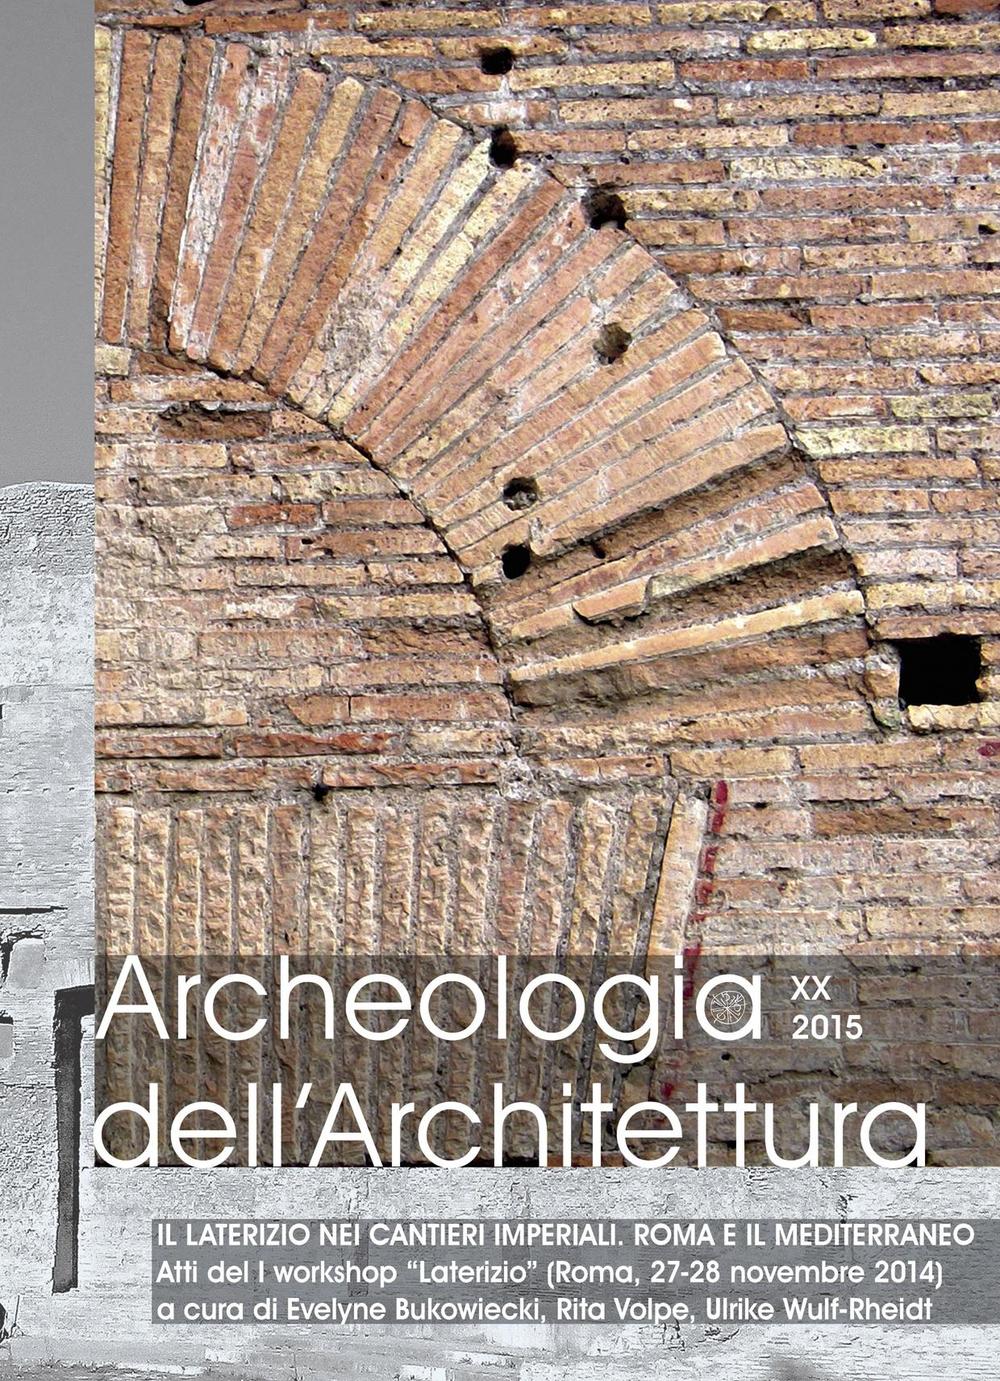 Archeologia dell'architettura (2015). Vol. 20